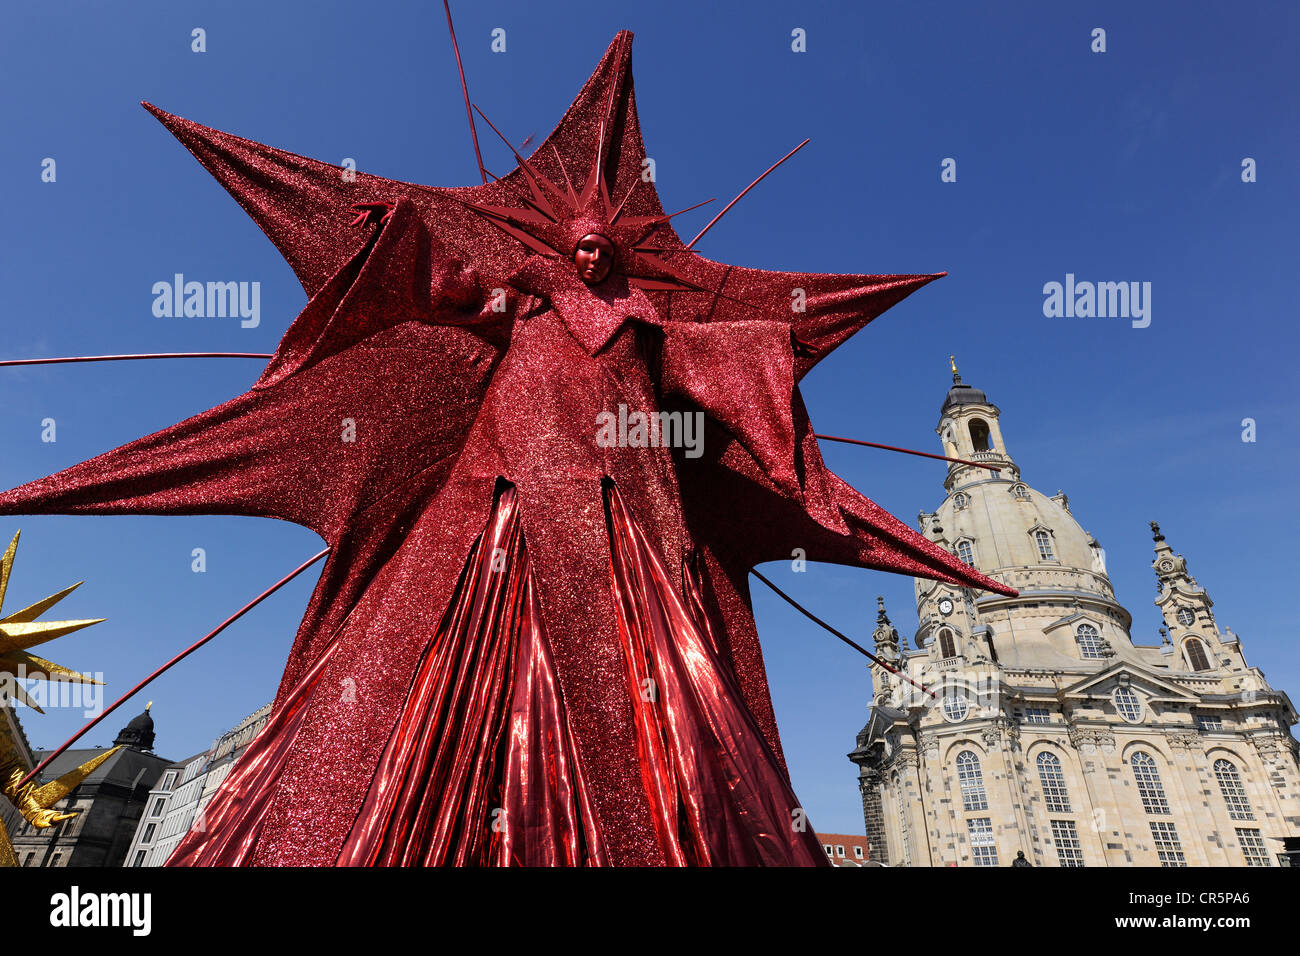 Festa della città di Dresda, grande rosso a forma di stella la figura di fronte alla chiesa di Nostra Signora sulla piazza Neumarkt, Sassonia Foto Stock